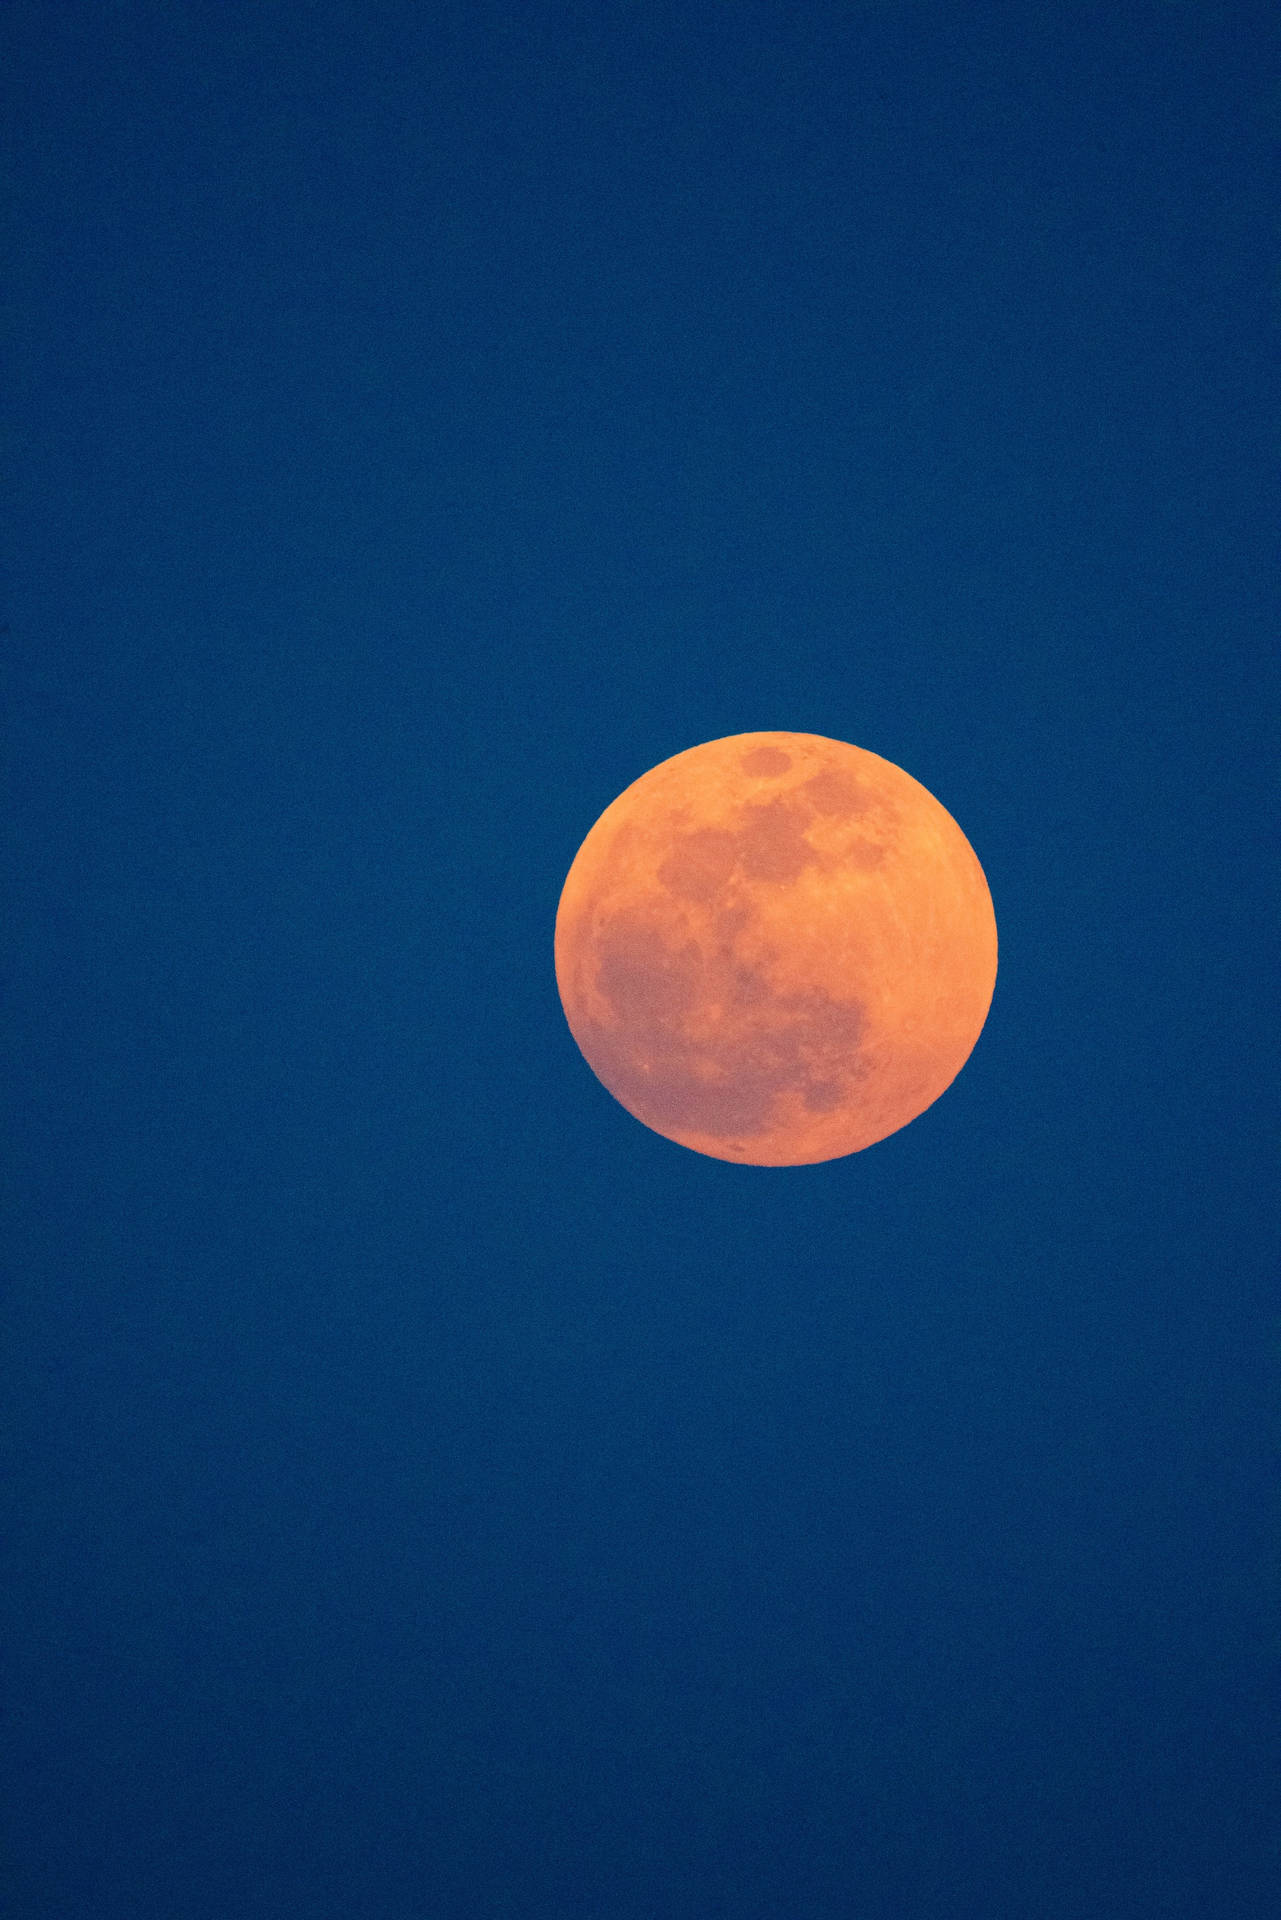 Luna orange måne blå himmel Wallpaper